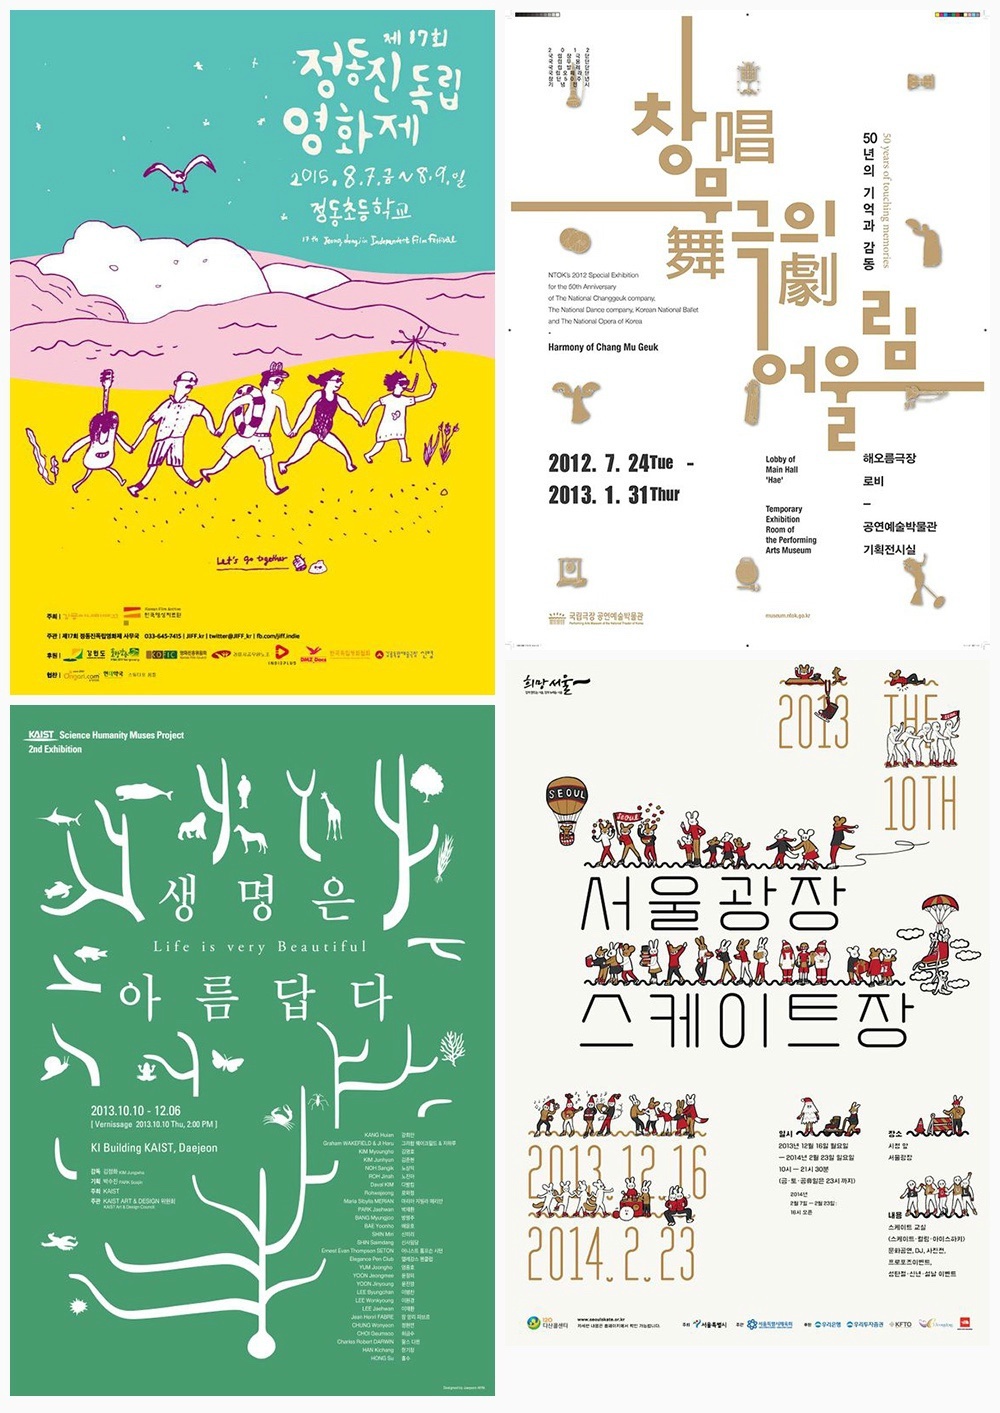 36个来自韩国的文字排版设计